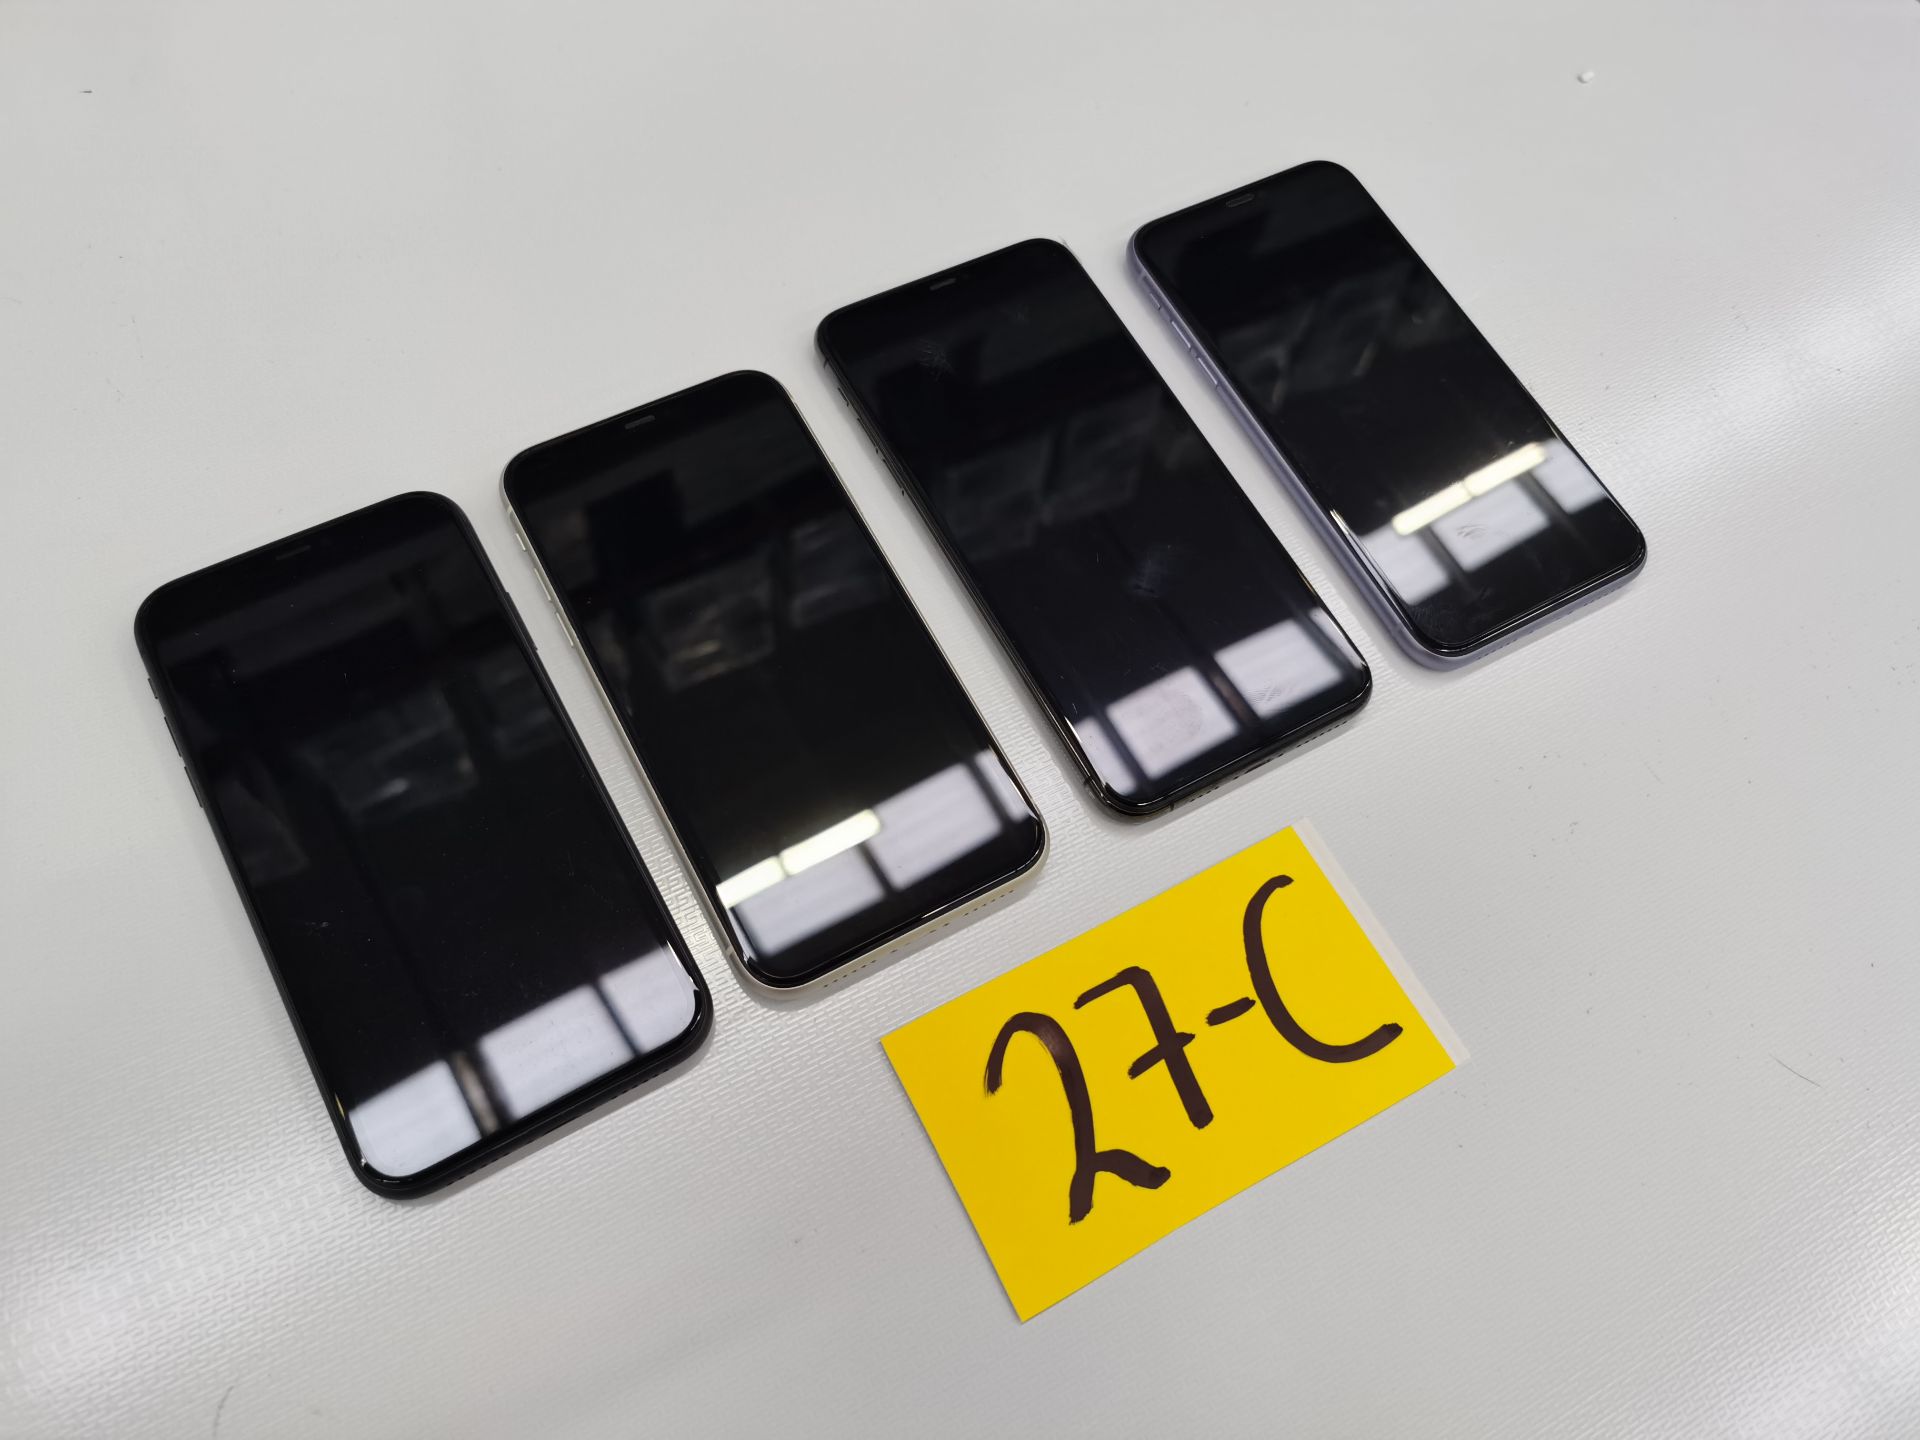 Lote de 4 Equipos Apple: 3 Iphone 11 de 64GB, y 1 Iphone de 128GB - Image 3 of 13